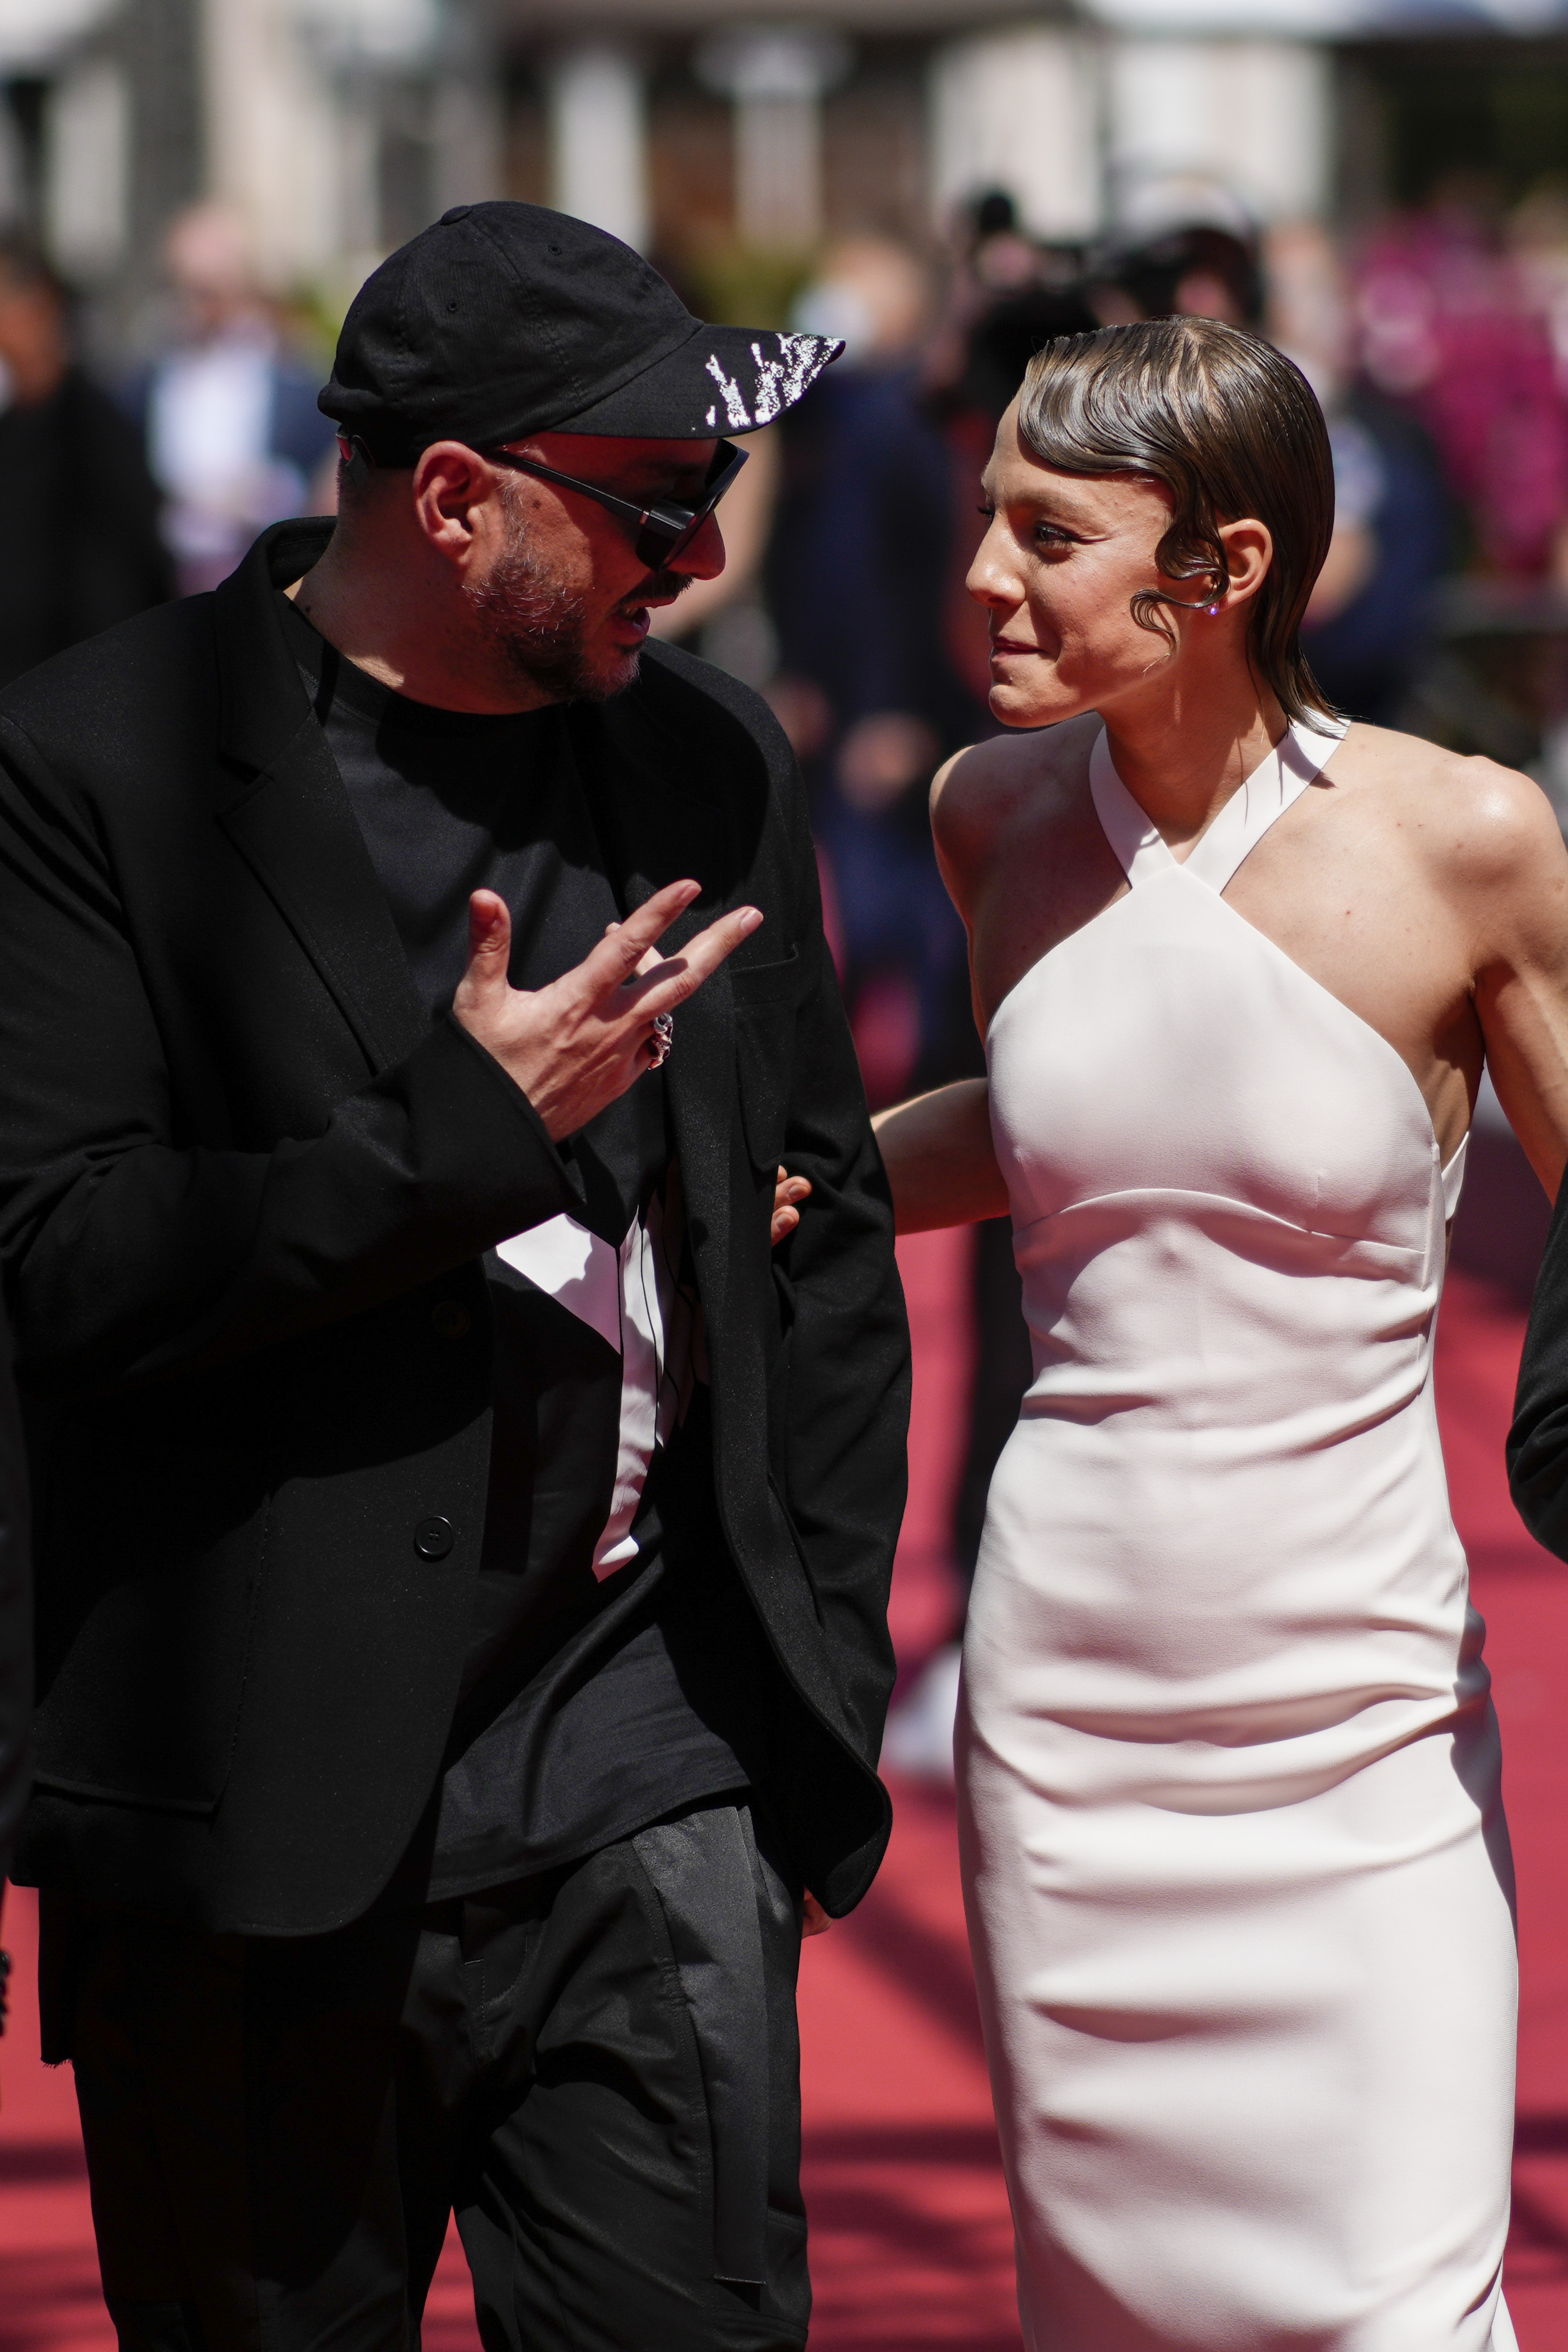 El director ruso Kirill Serebrennikov y la actriz Alyona Mikhailova llegan al estreno de su película "Tchaikovsky's Wife" en la 75ta edición del Festival International de Cine de Cannes, el miércoles 18 de mayo de 2022 en Cannes, Francia. (Foto AP/Daniel Cole)